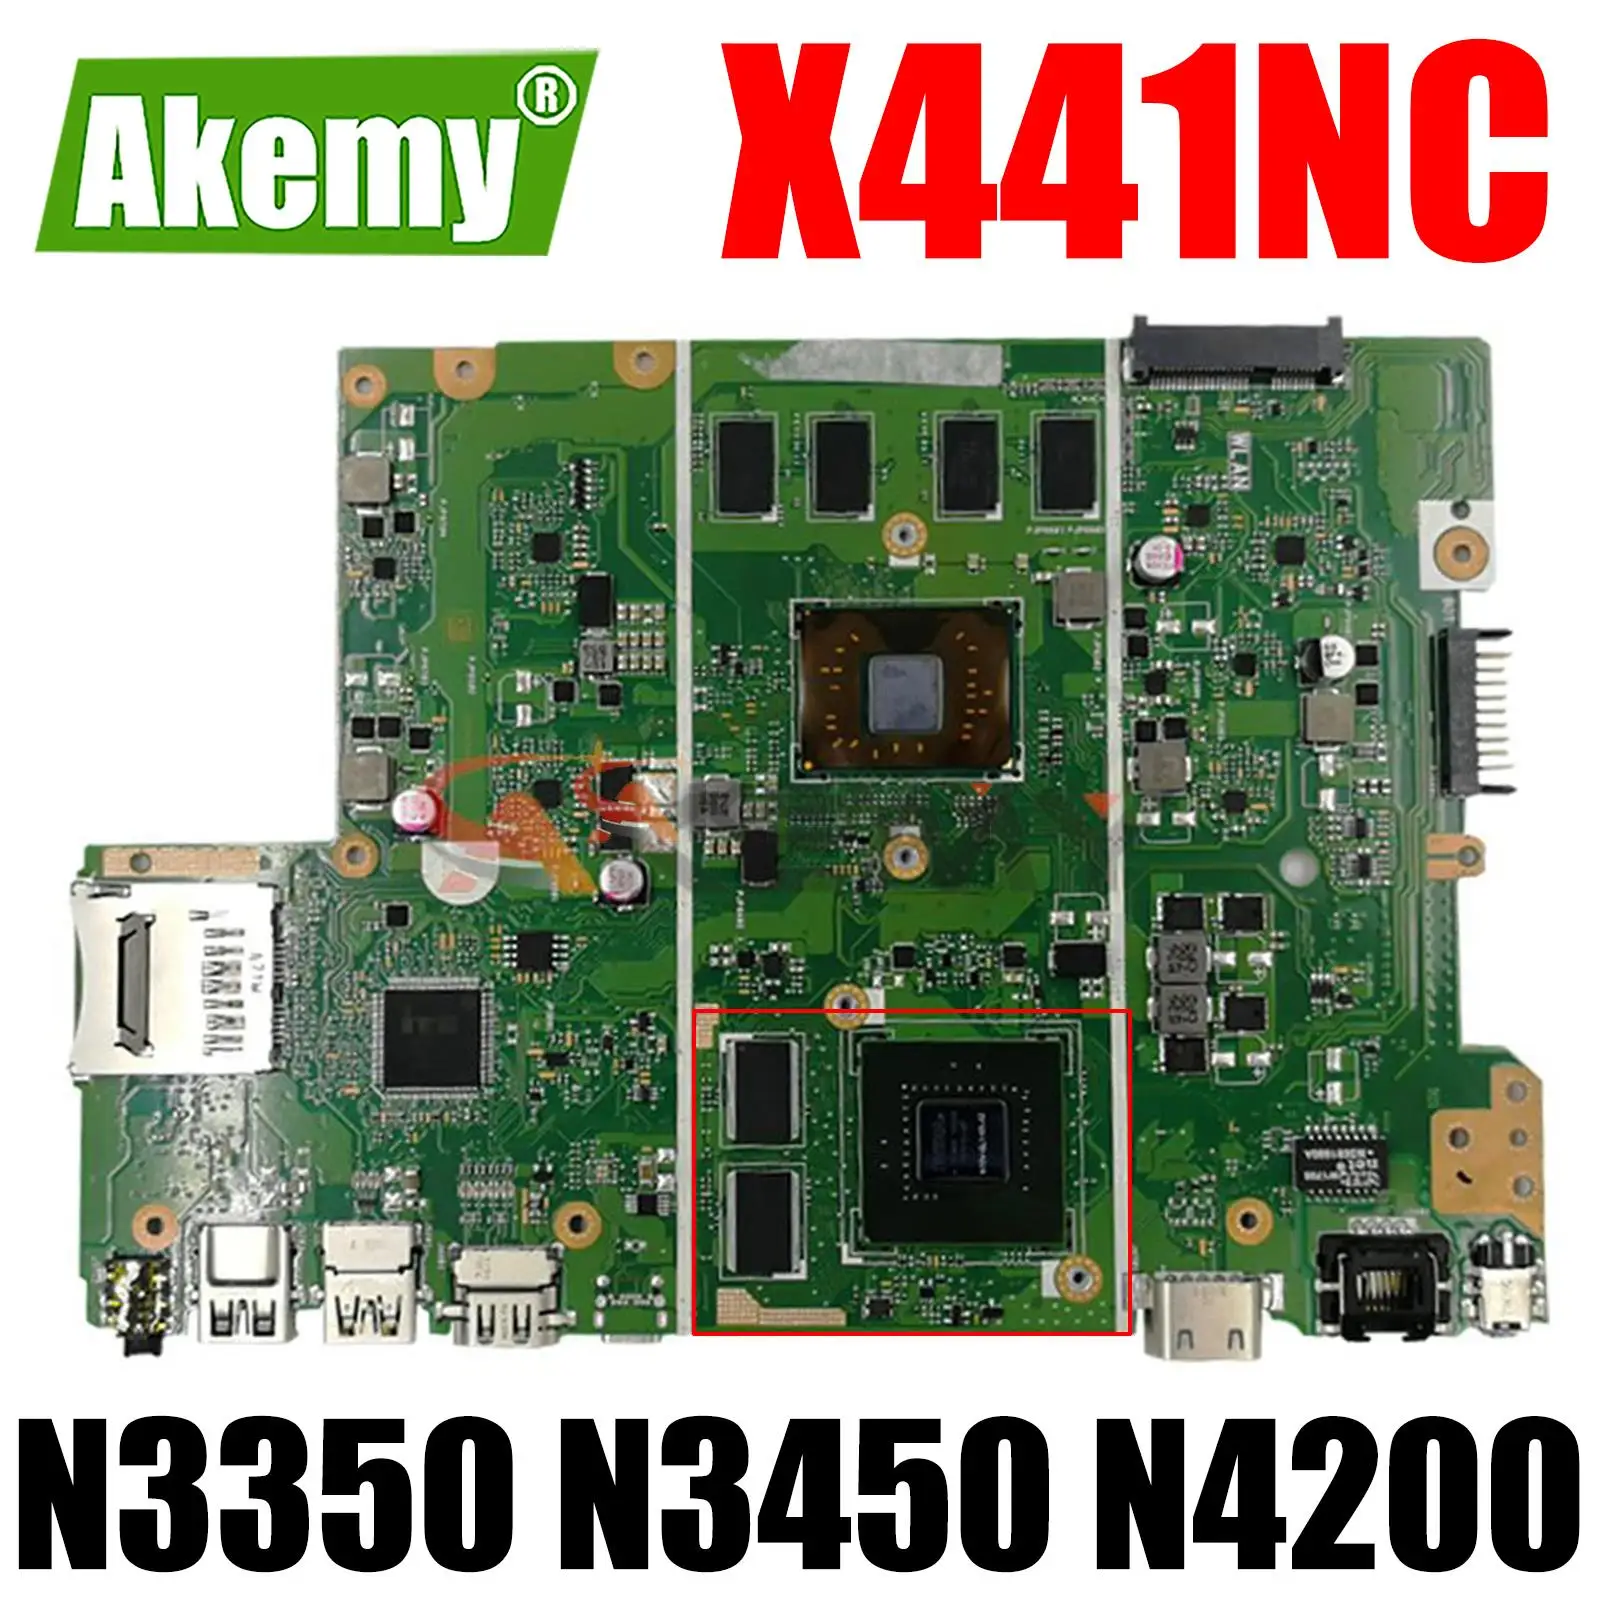 

X441NC N3350 N3450 N4200 CPU 4GB RAM GT810M GPU Laptop Motherboard REV2.1/2.2 for ASUS X441N X441NC F441N Notebook Mainboard